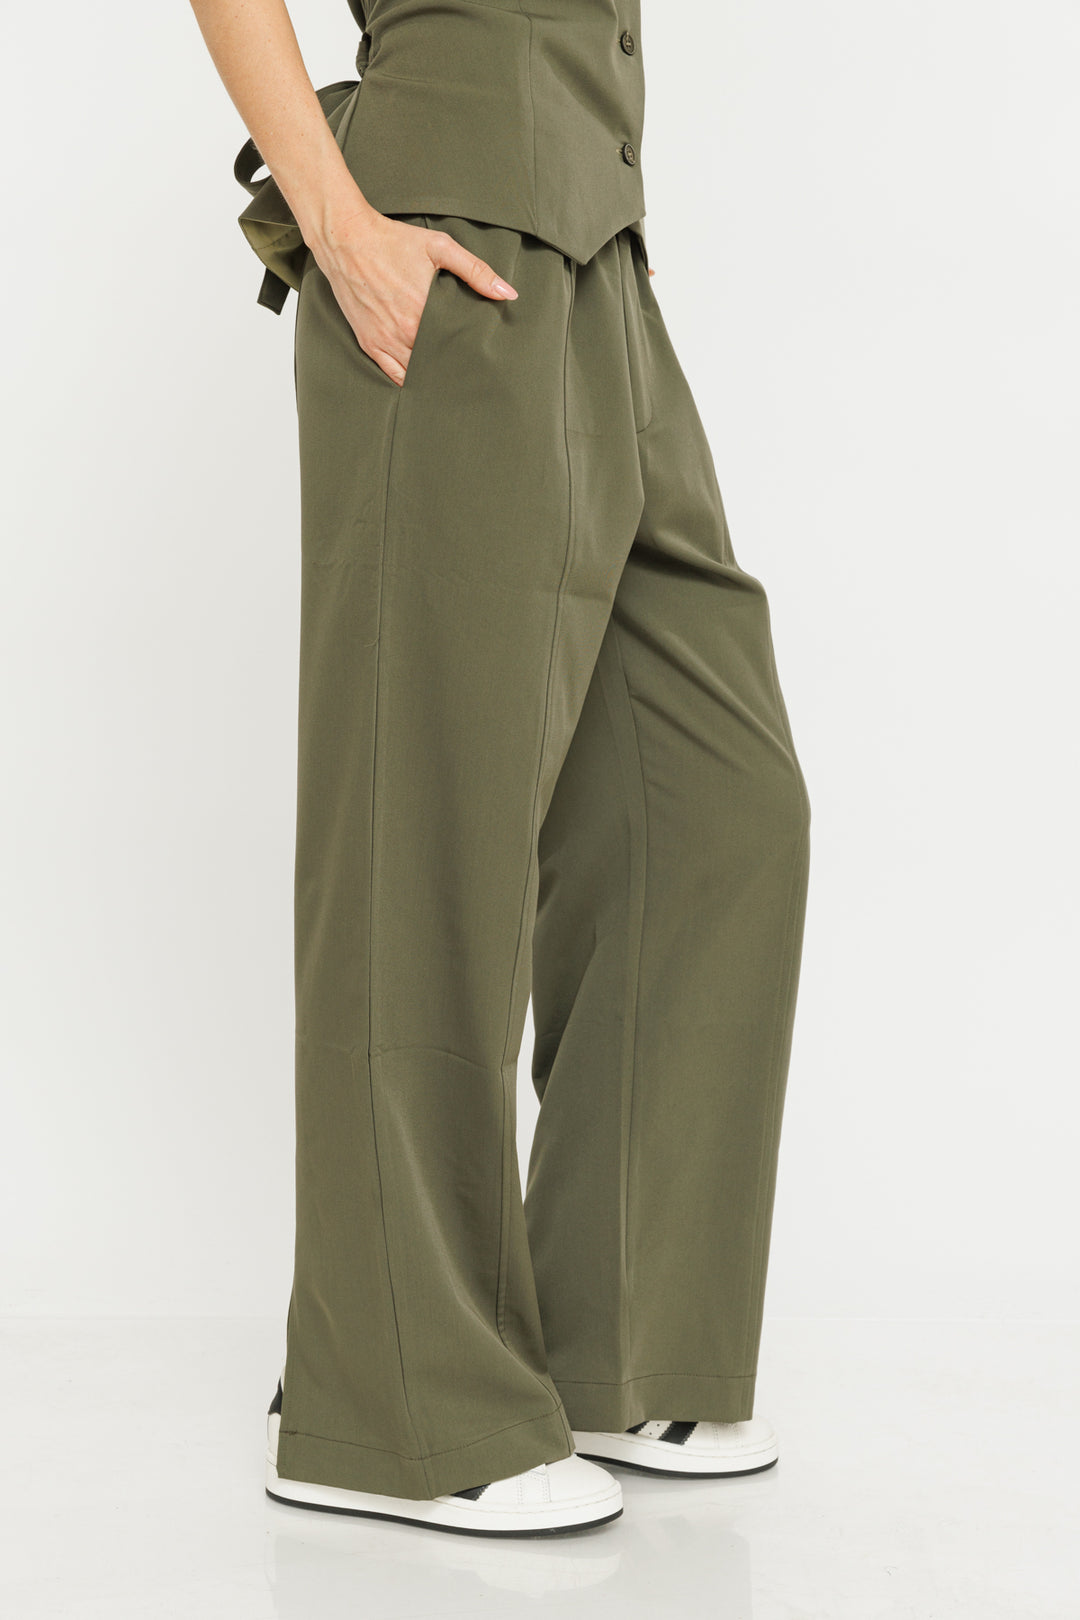 מכנסיים רחבים שסעים קדמיים Bella בצבע ירוק זית